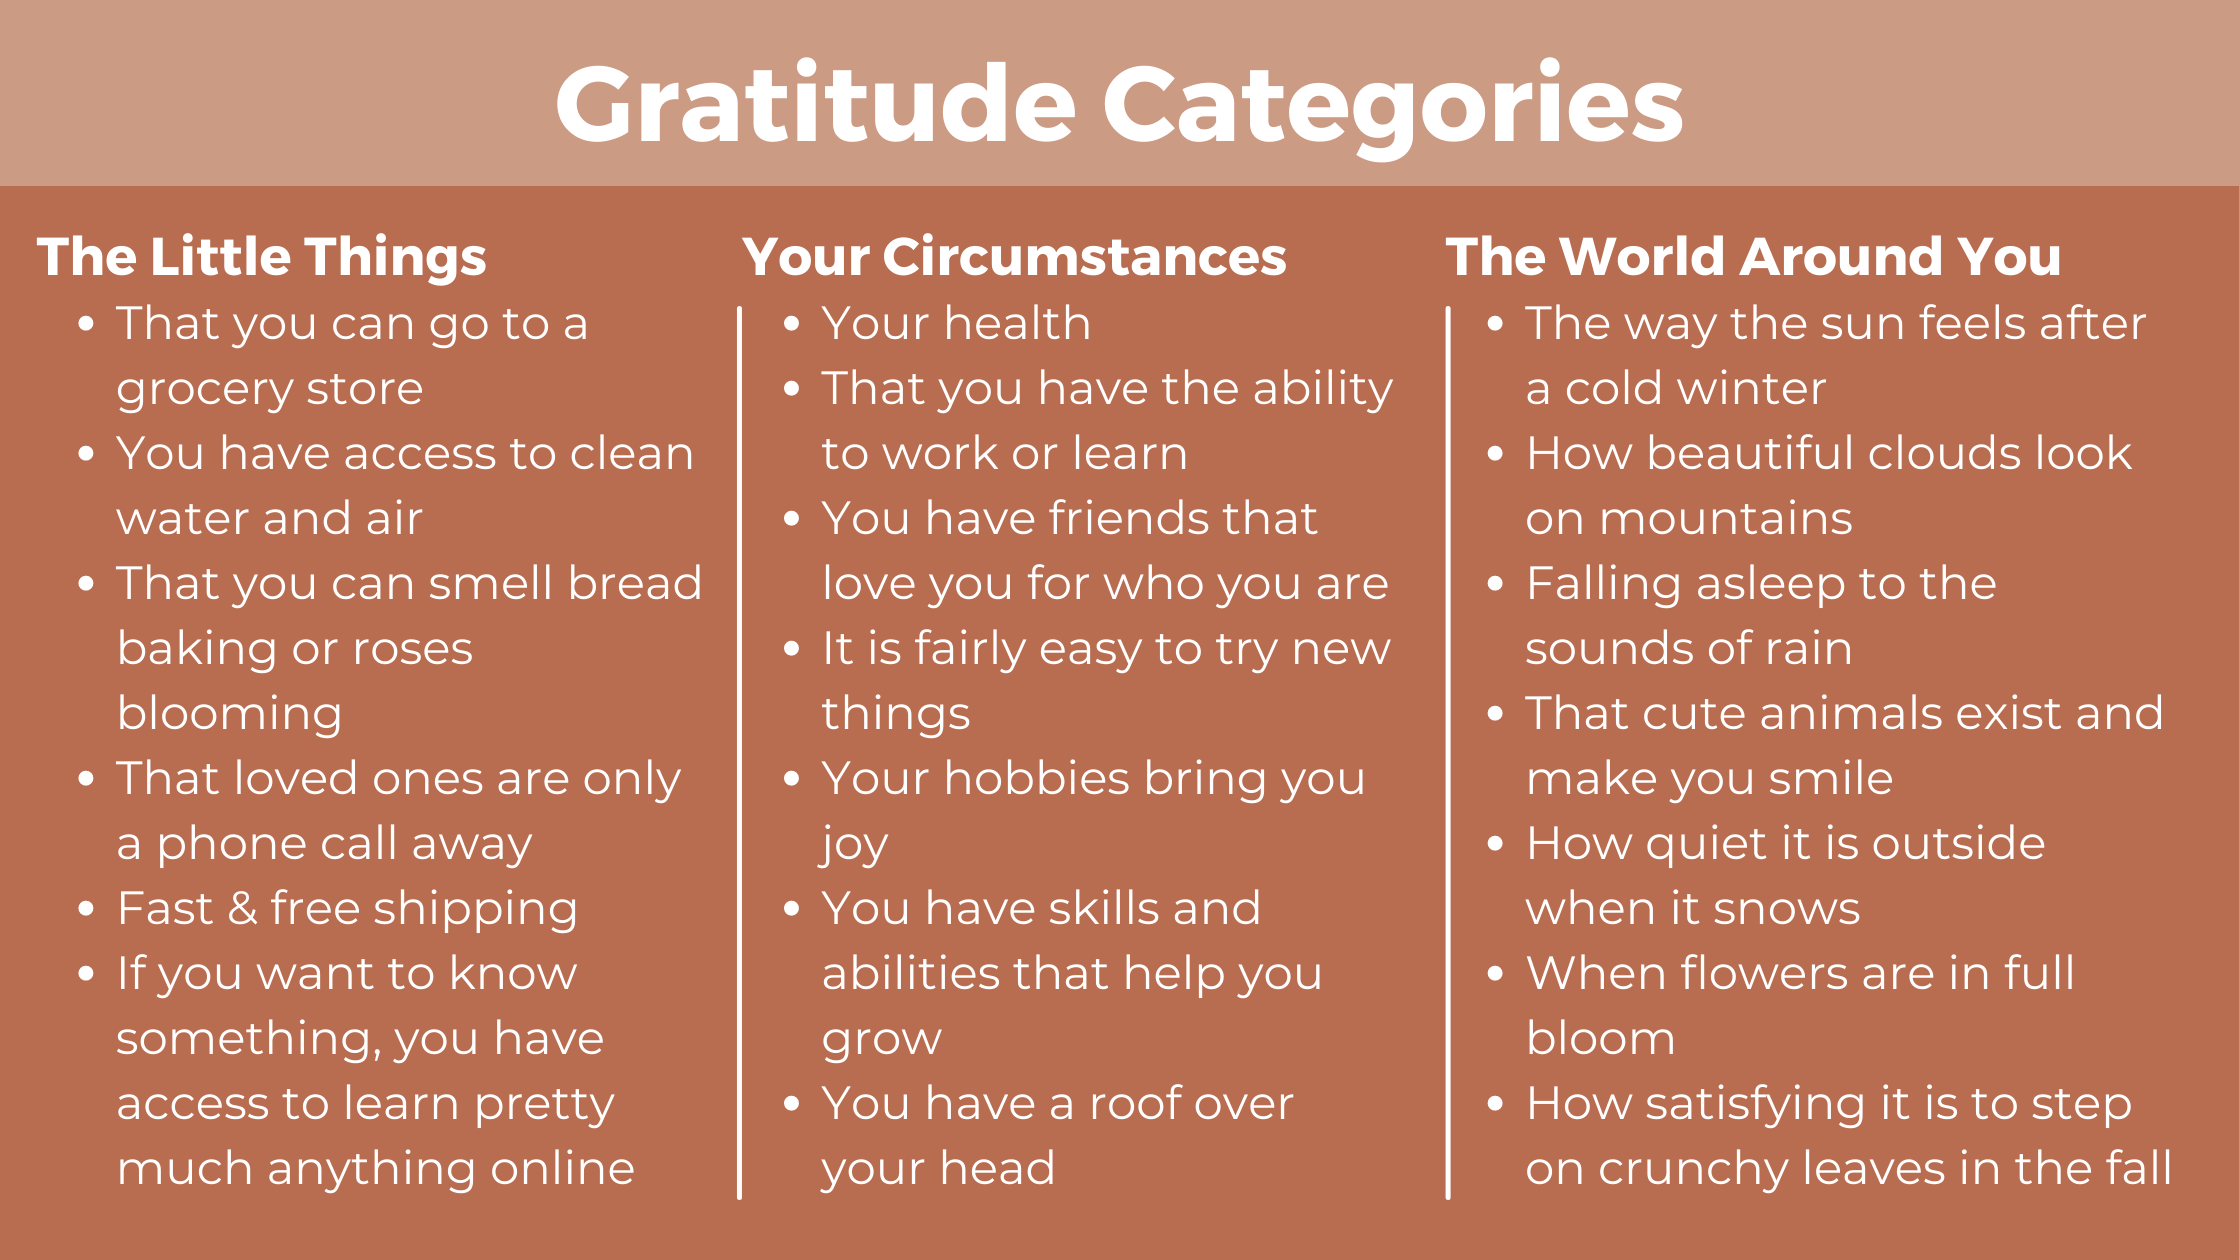 Categories of gratitude